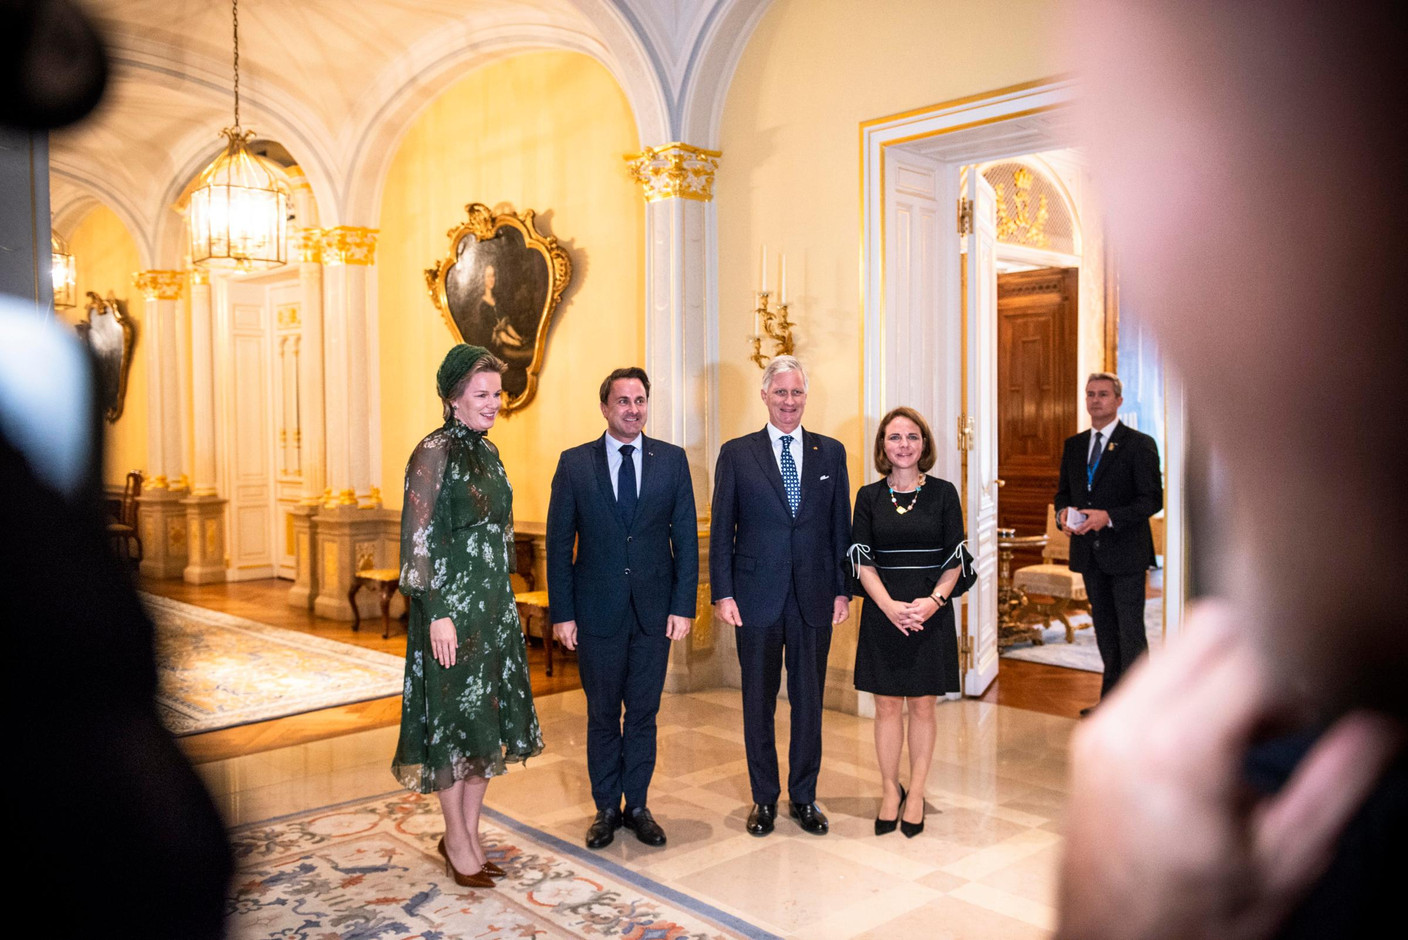 S.M. la Reine des Belges, Xavier Bettel (Premier ministre), S.M. le Roi des Belges et Corinne Cahen (Ministre de la Famille) (Photo: Anthony Dehez)